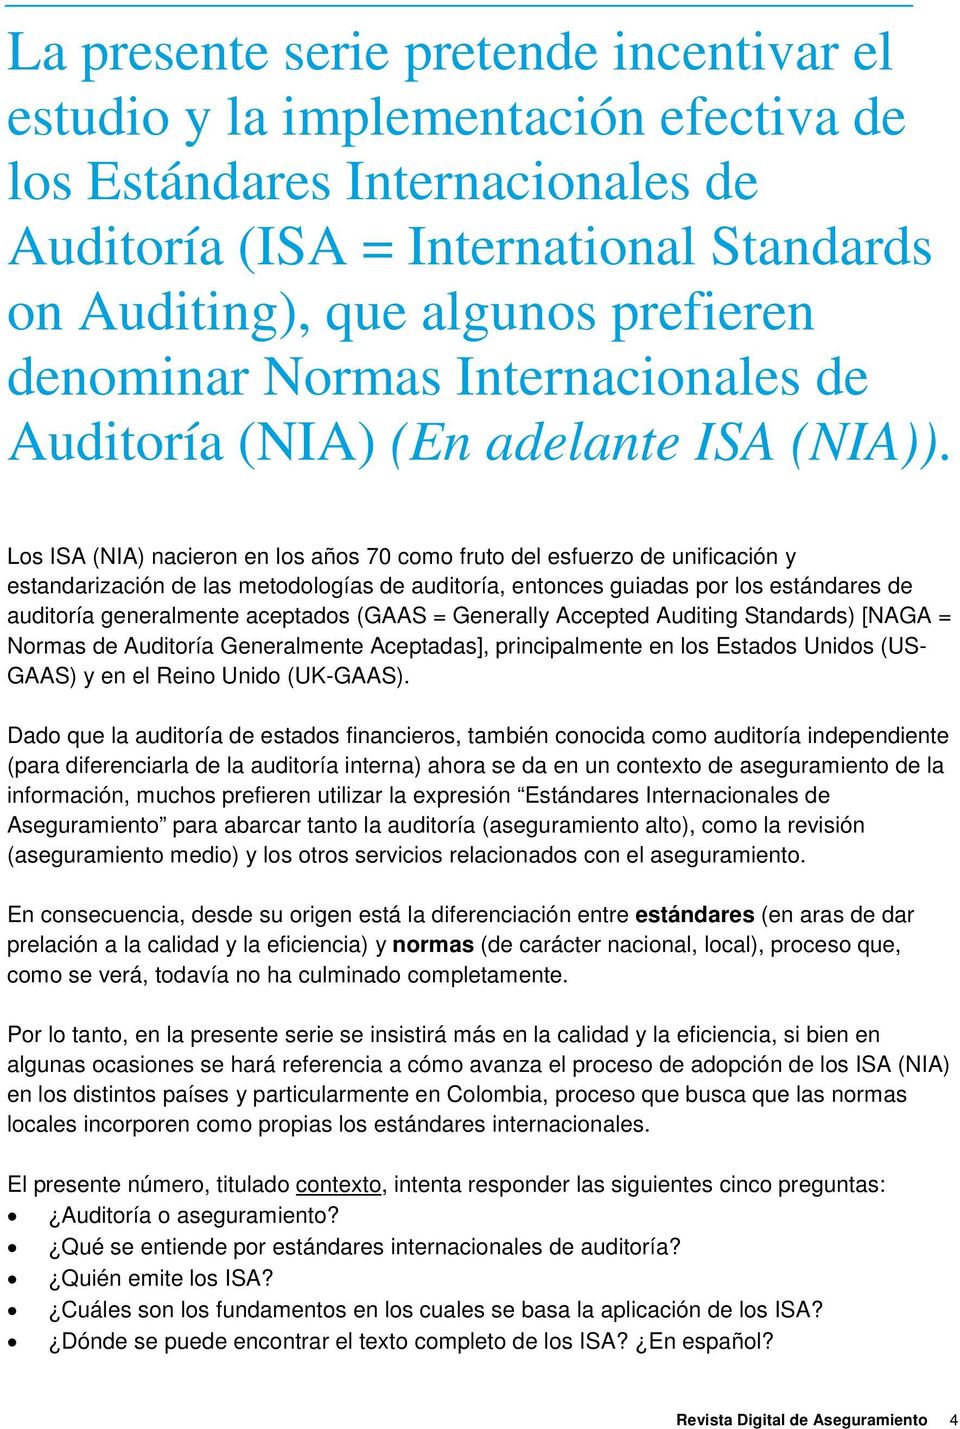 Los ISA () nacieron en los años 70 como fruto del esfuerzo de unificación y estandarización de las metodologías de auditoría, entonces guiadas por los estándares de auditoría generalmente aceptados